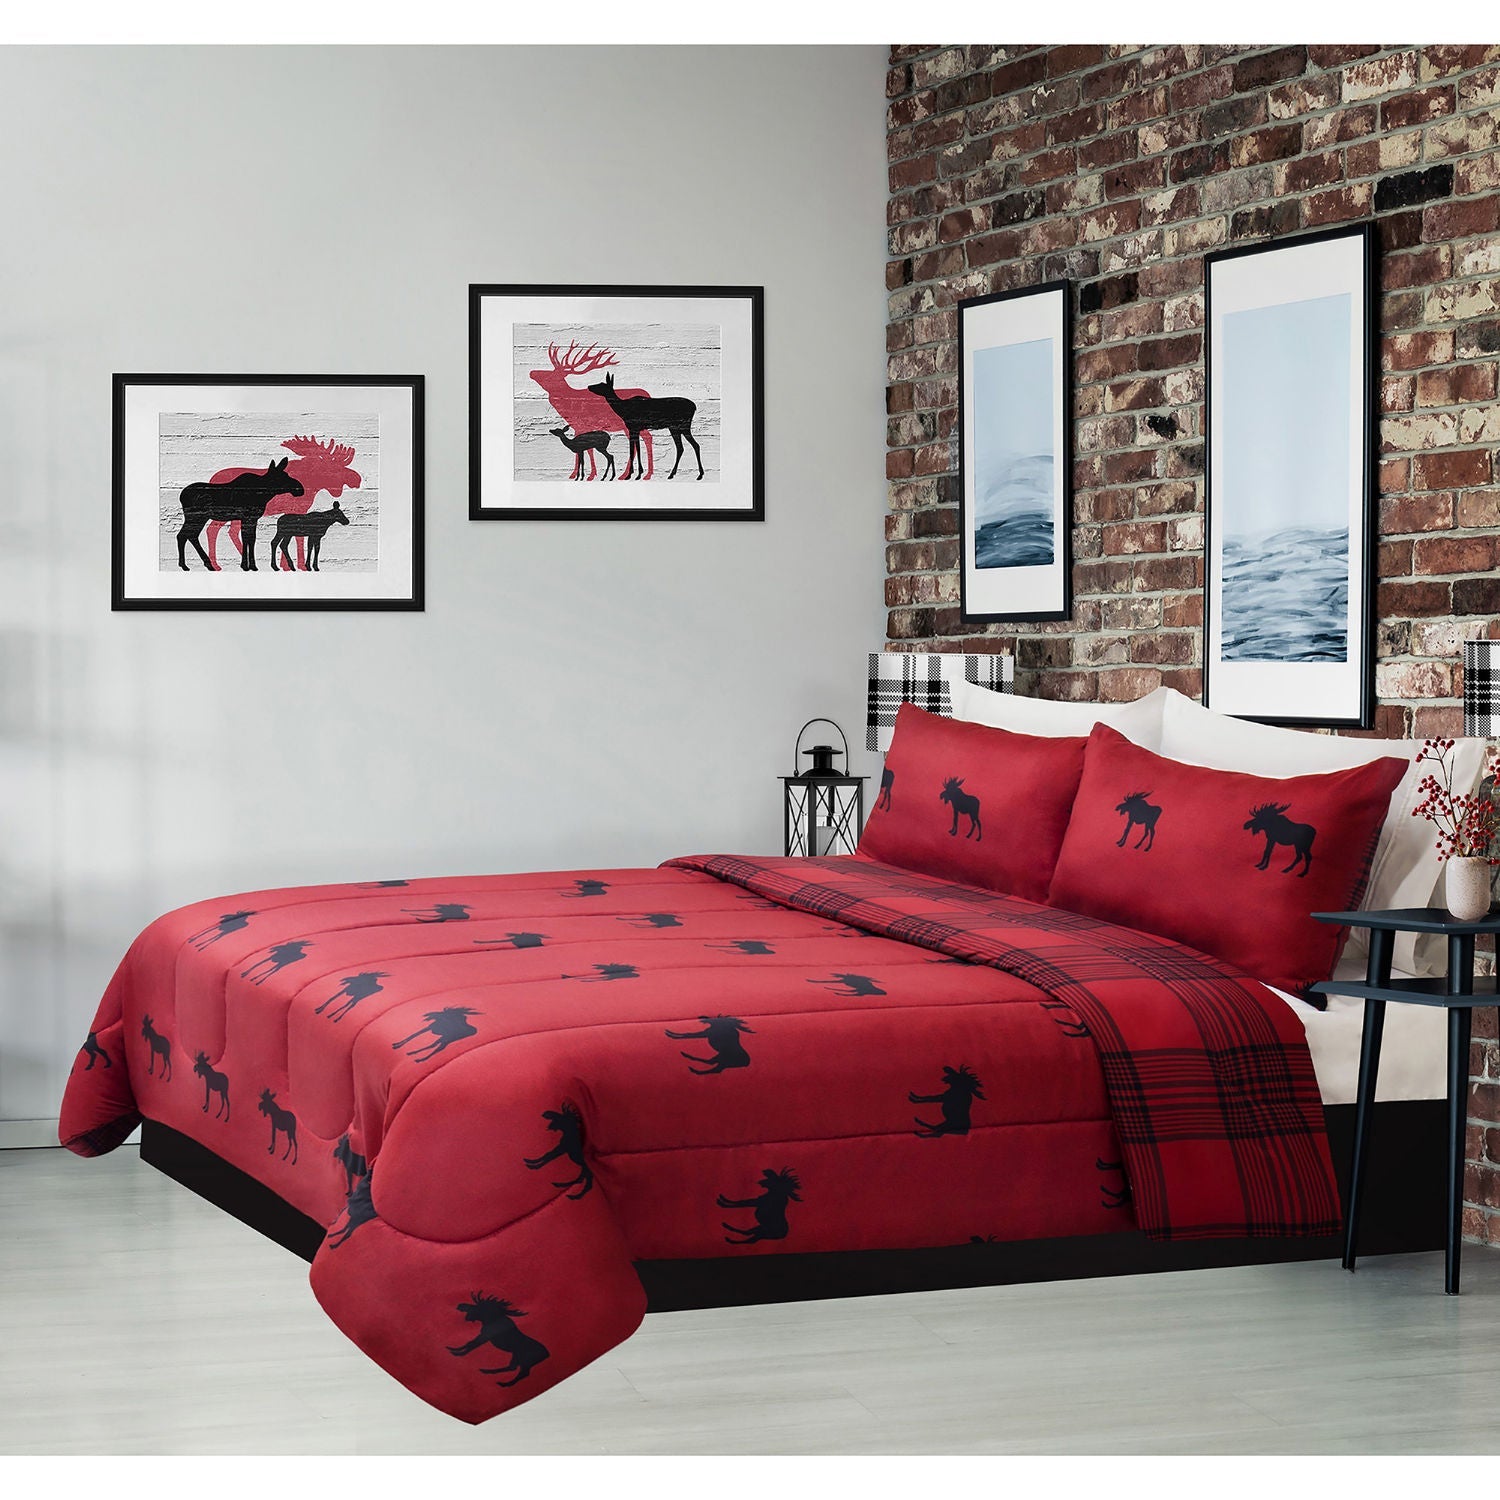 Reversible Printed Comforter Bedding Set 3 Piece Double/Queen Heathered Moose Rustic Cabin